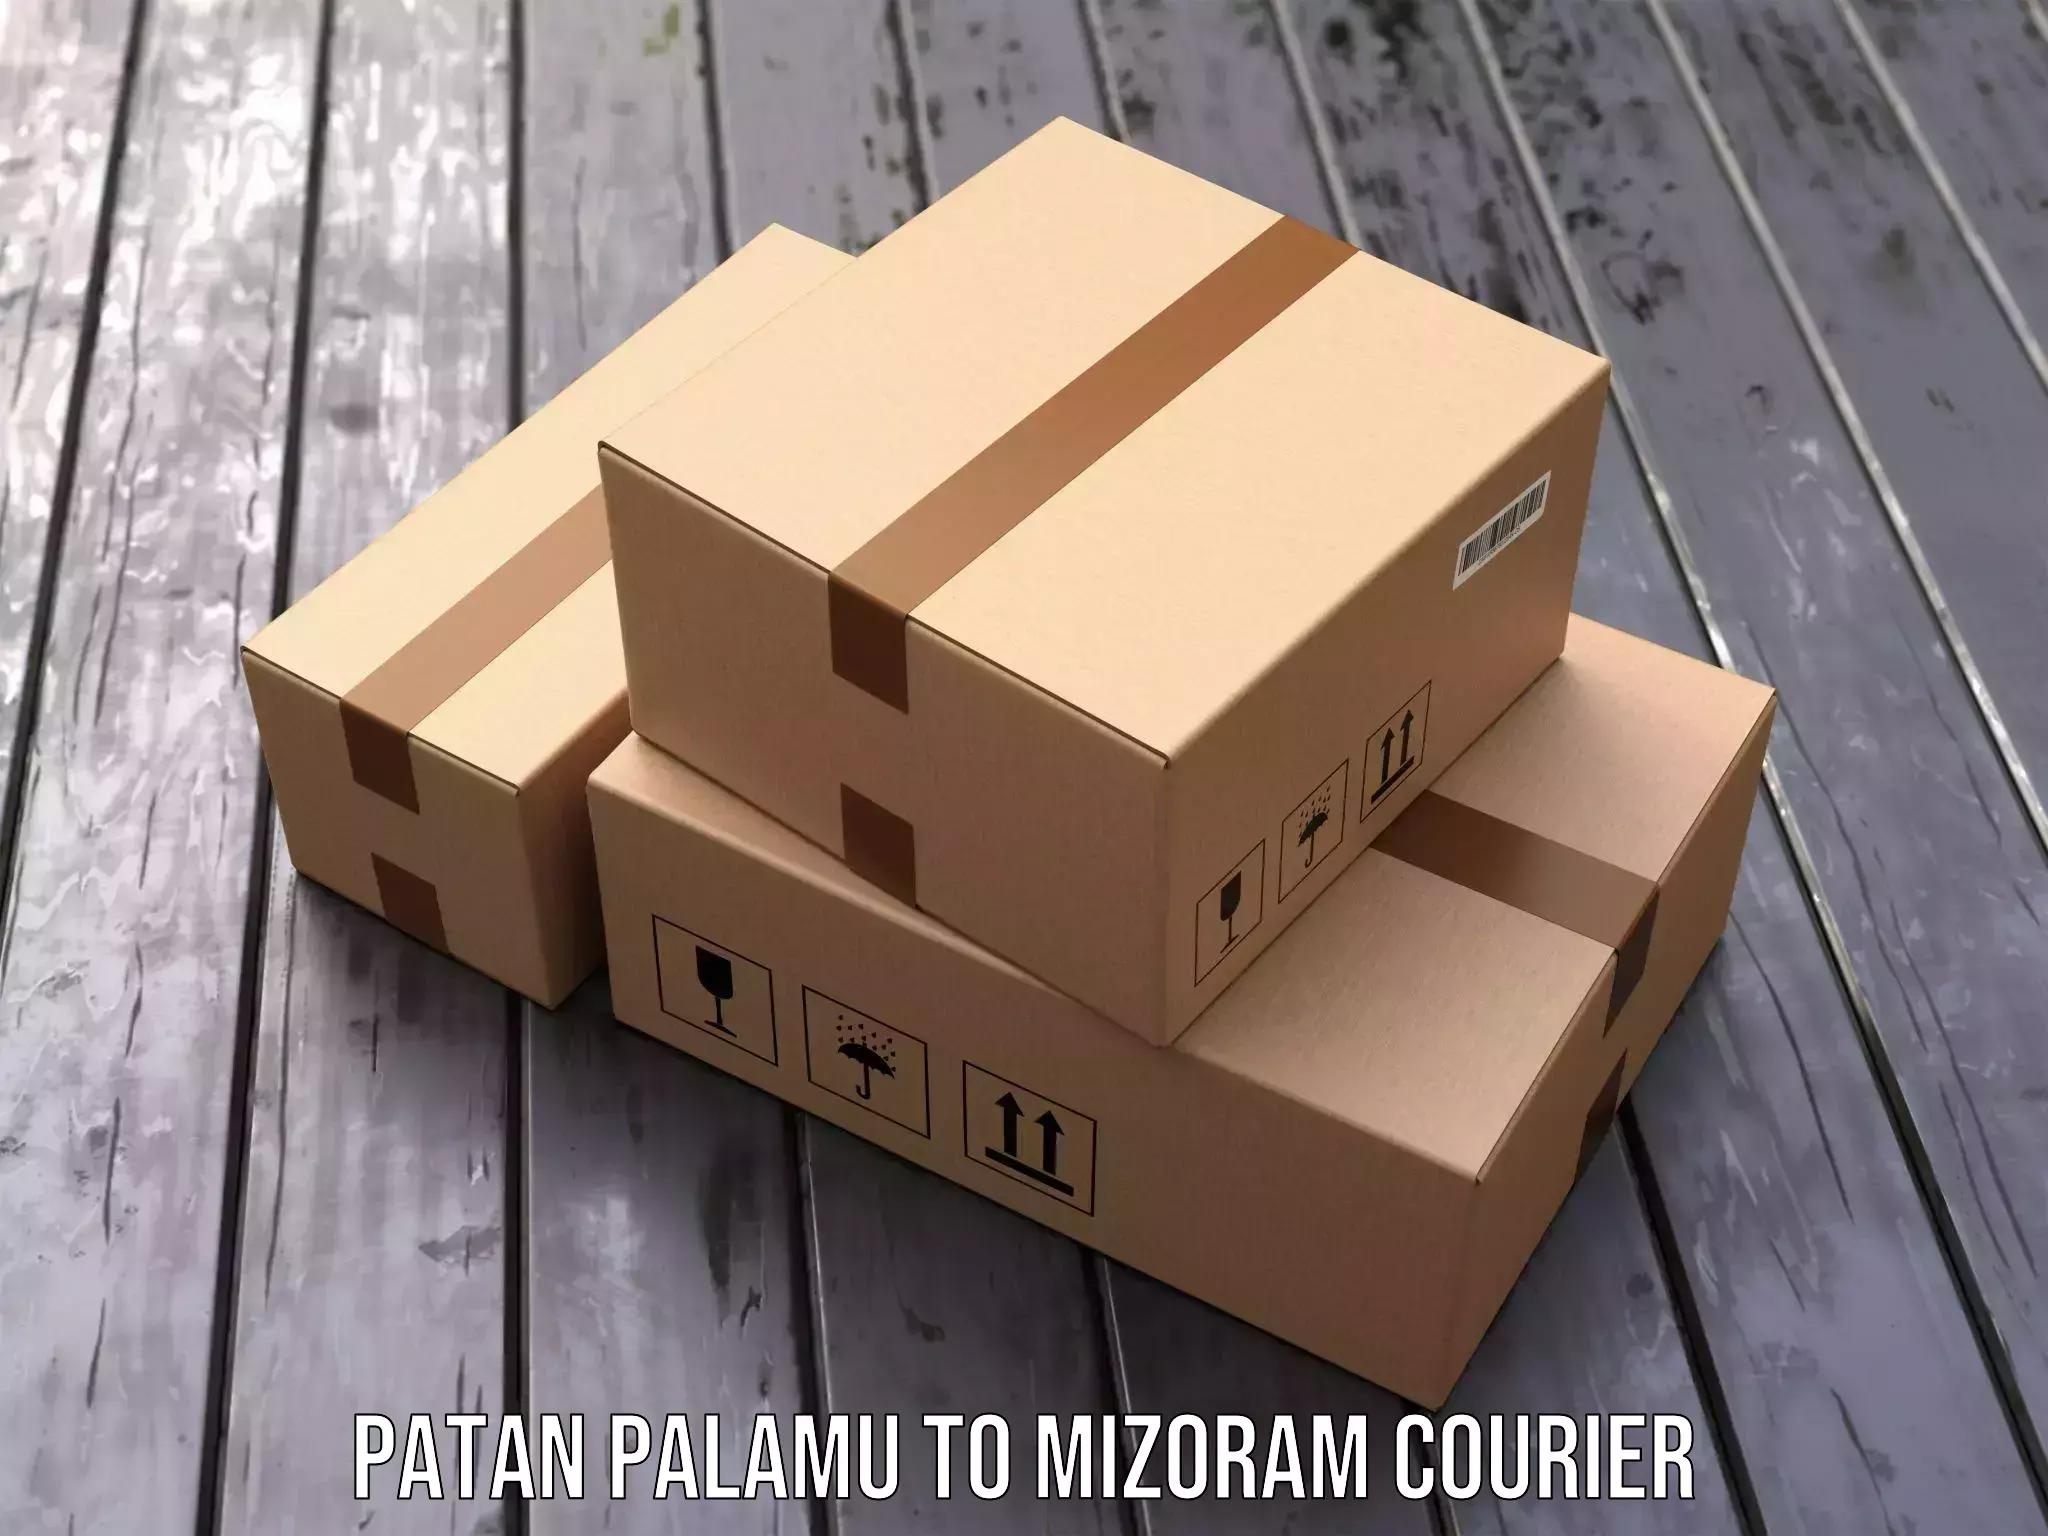 Courier service efficiency Patan Palamu to Mizoram